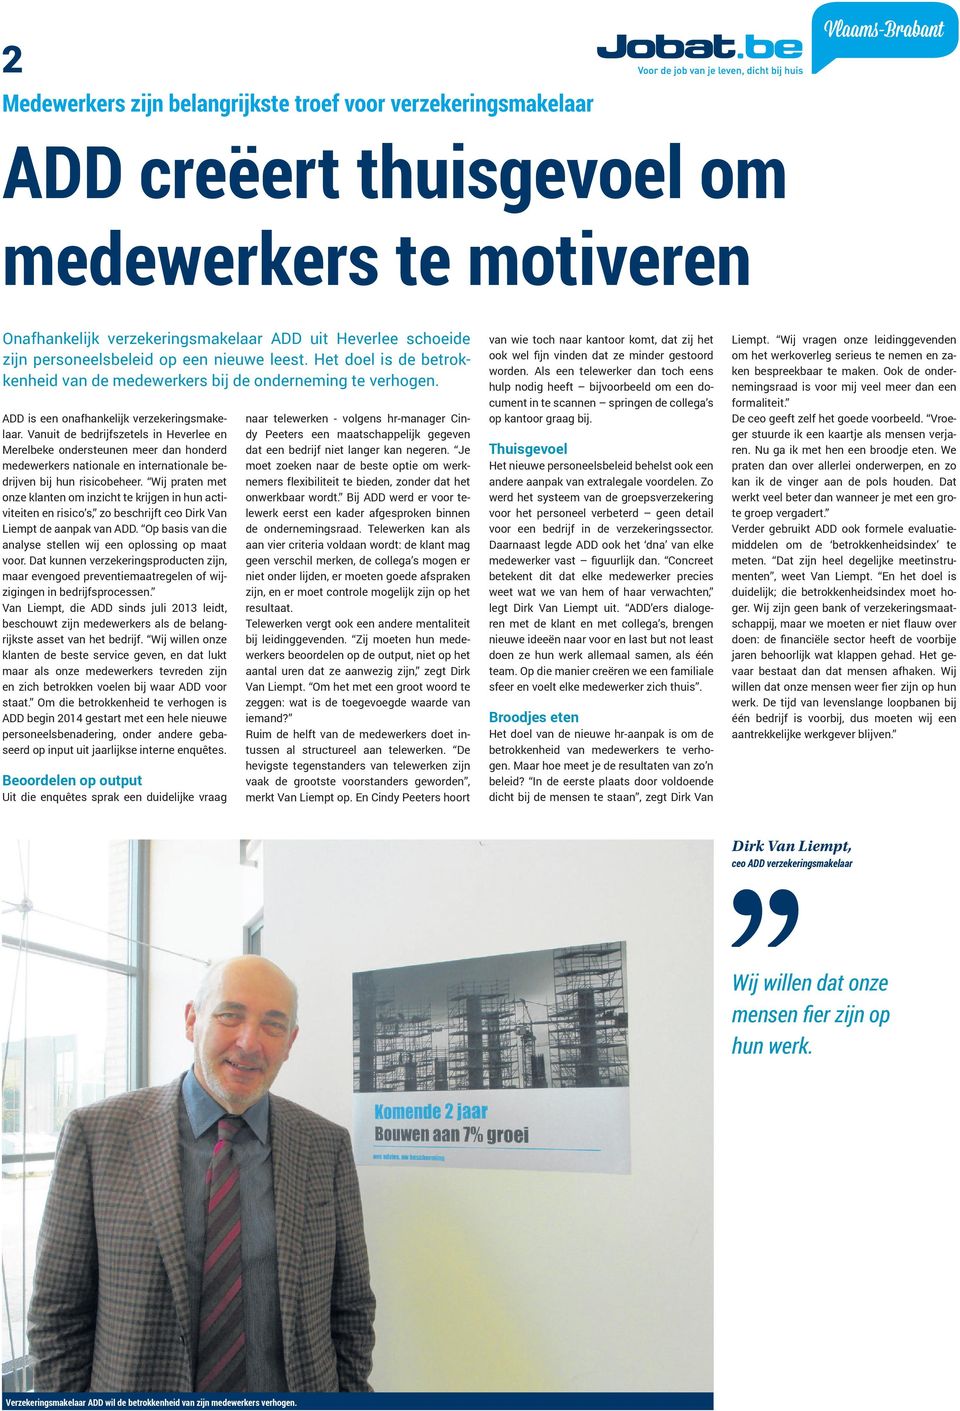 Vanuit de bedrijfszetels in Heverlee en Merelbeke ondersteunen meer dan honderd medewerkers nationale en internationale bedrijven bij hun risicobeheer.